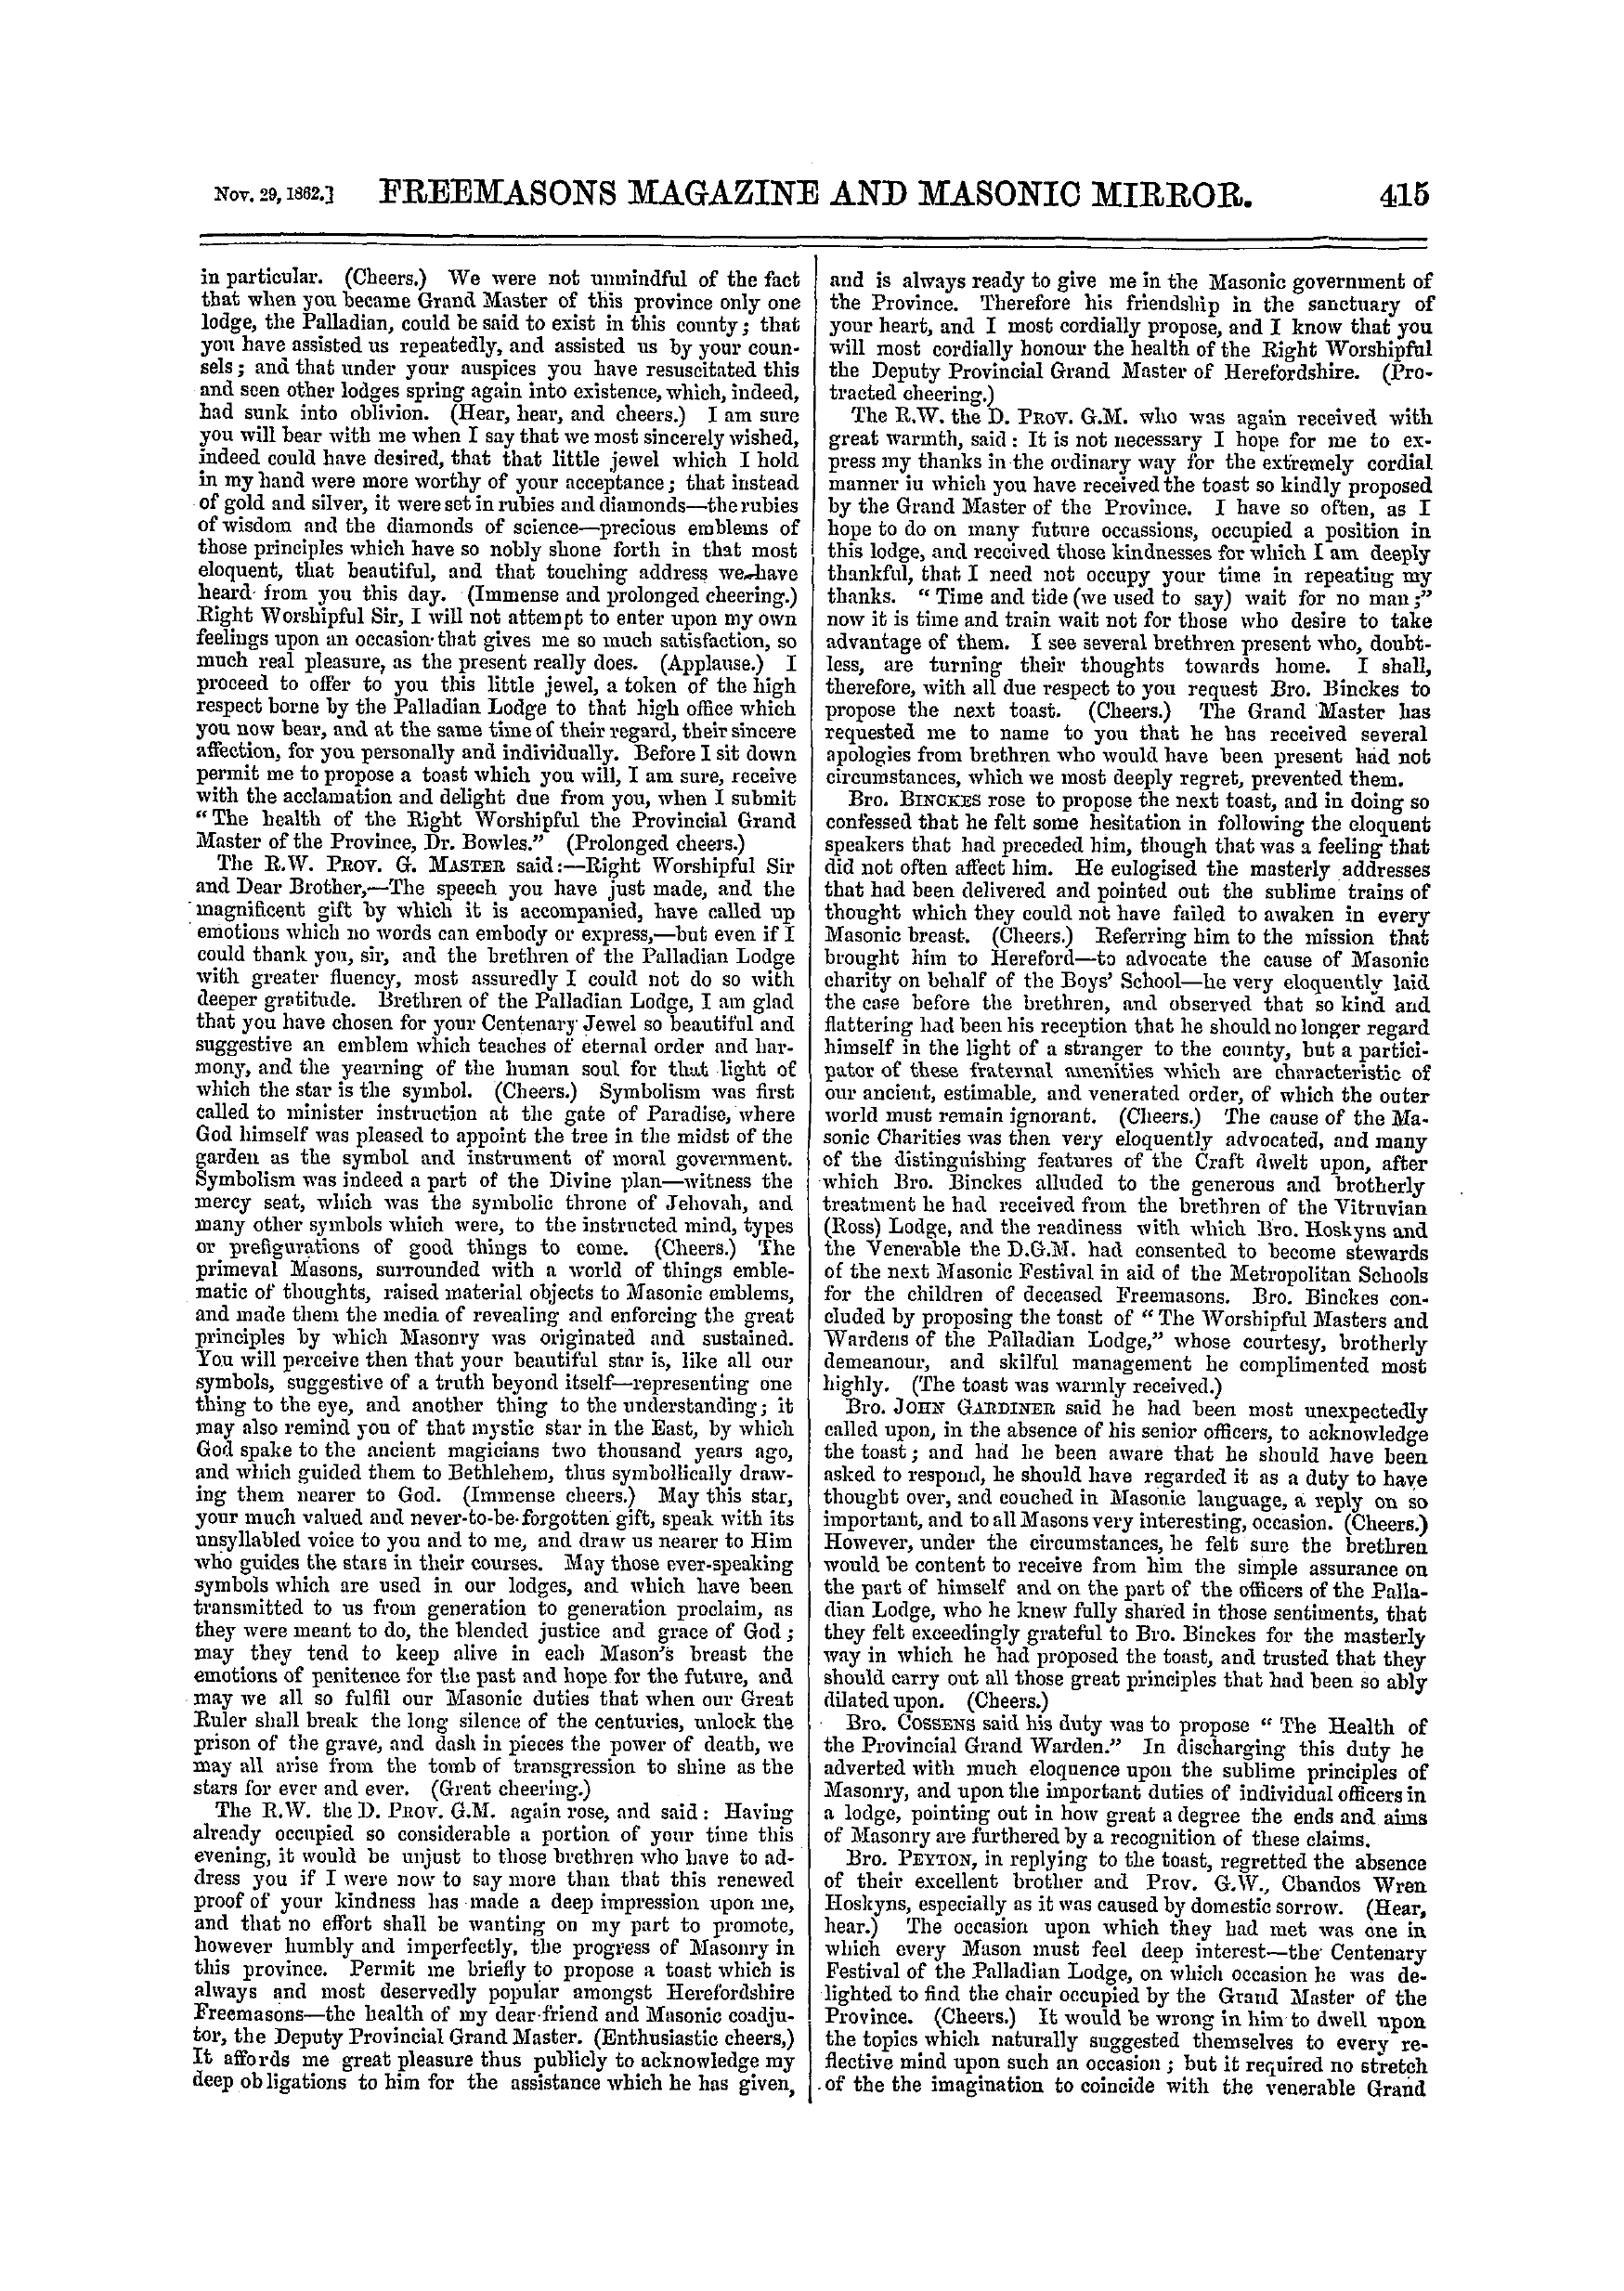 The Freemasons' Monthly Magazine: 1862-11-29: 15